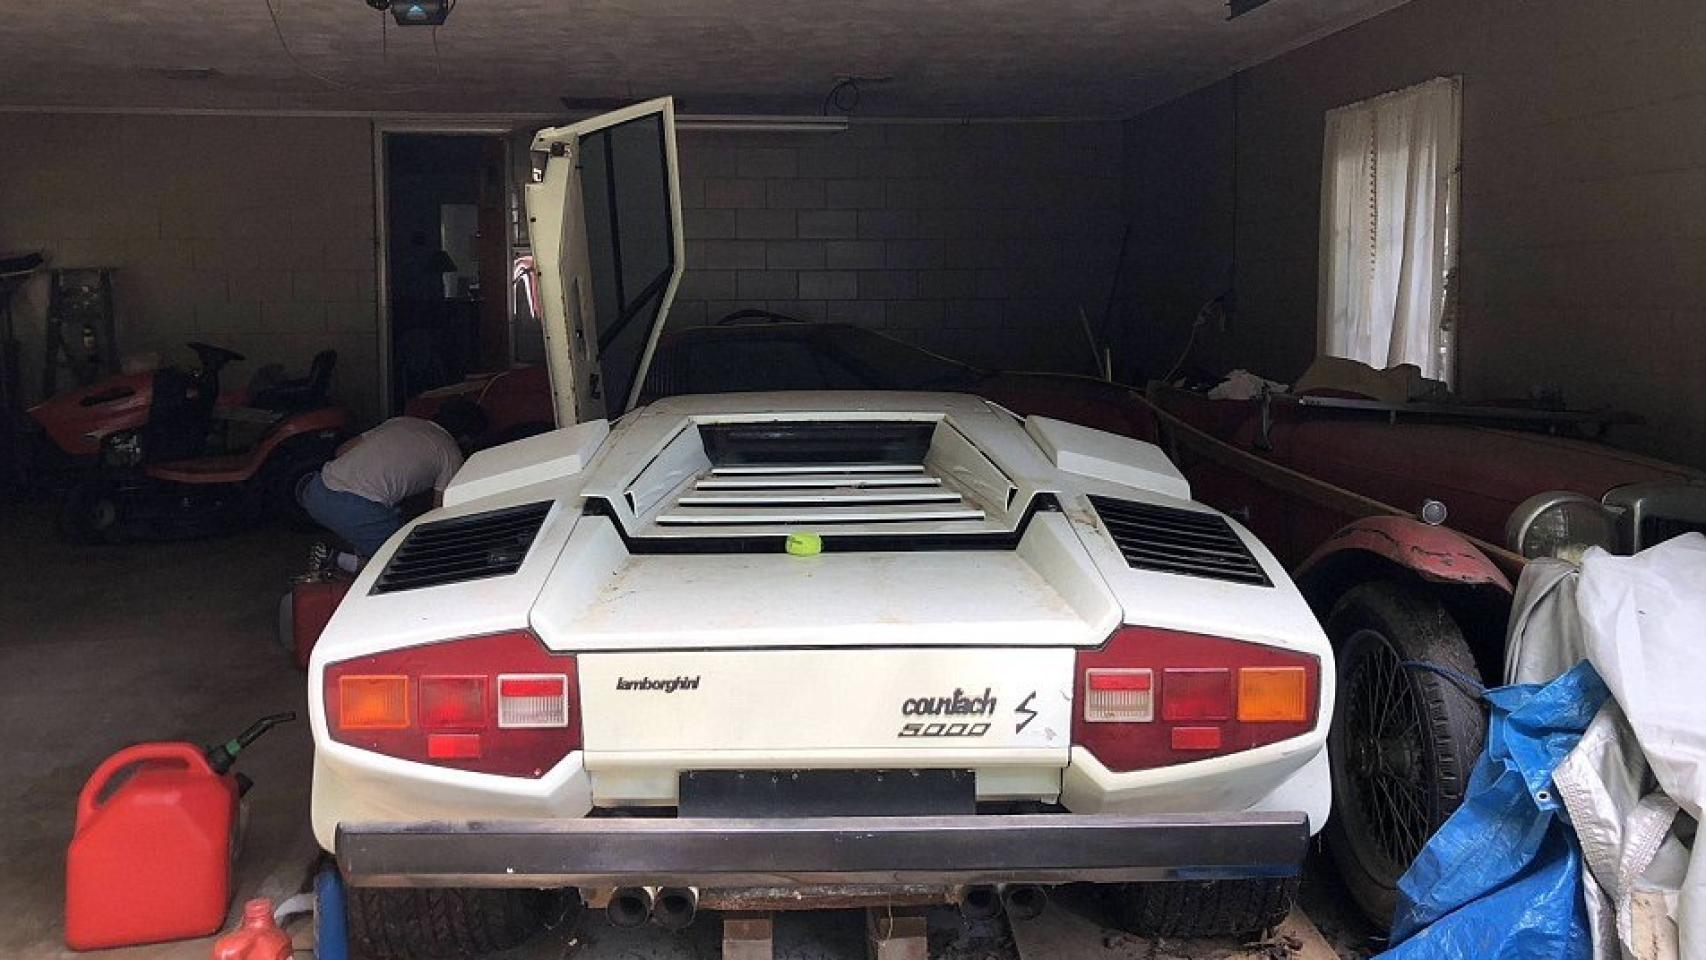 Encuentra un Lamborghini y un Ferrari abandonados en el garaje de su abuela